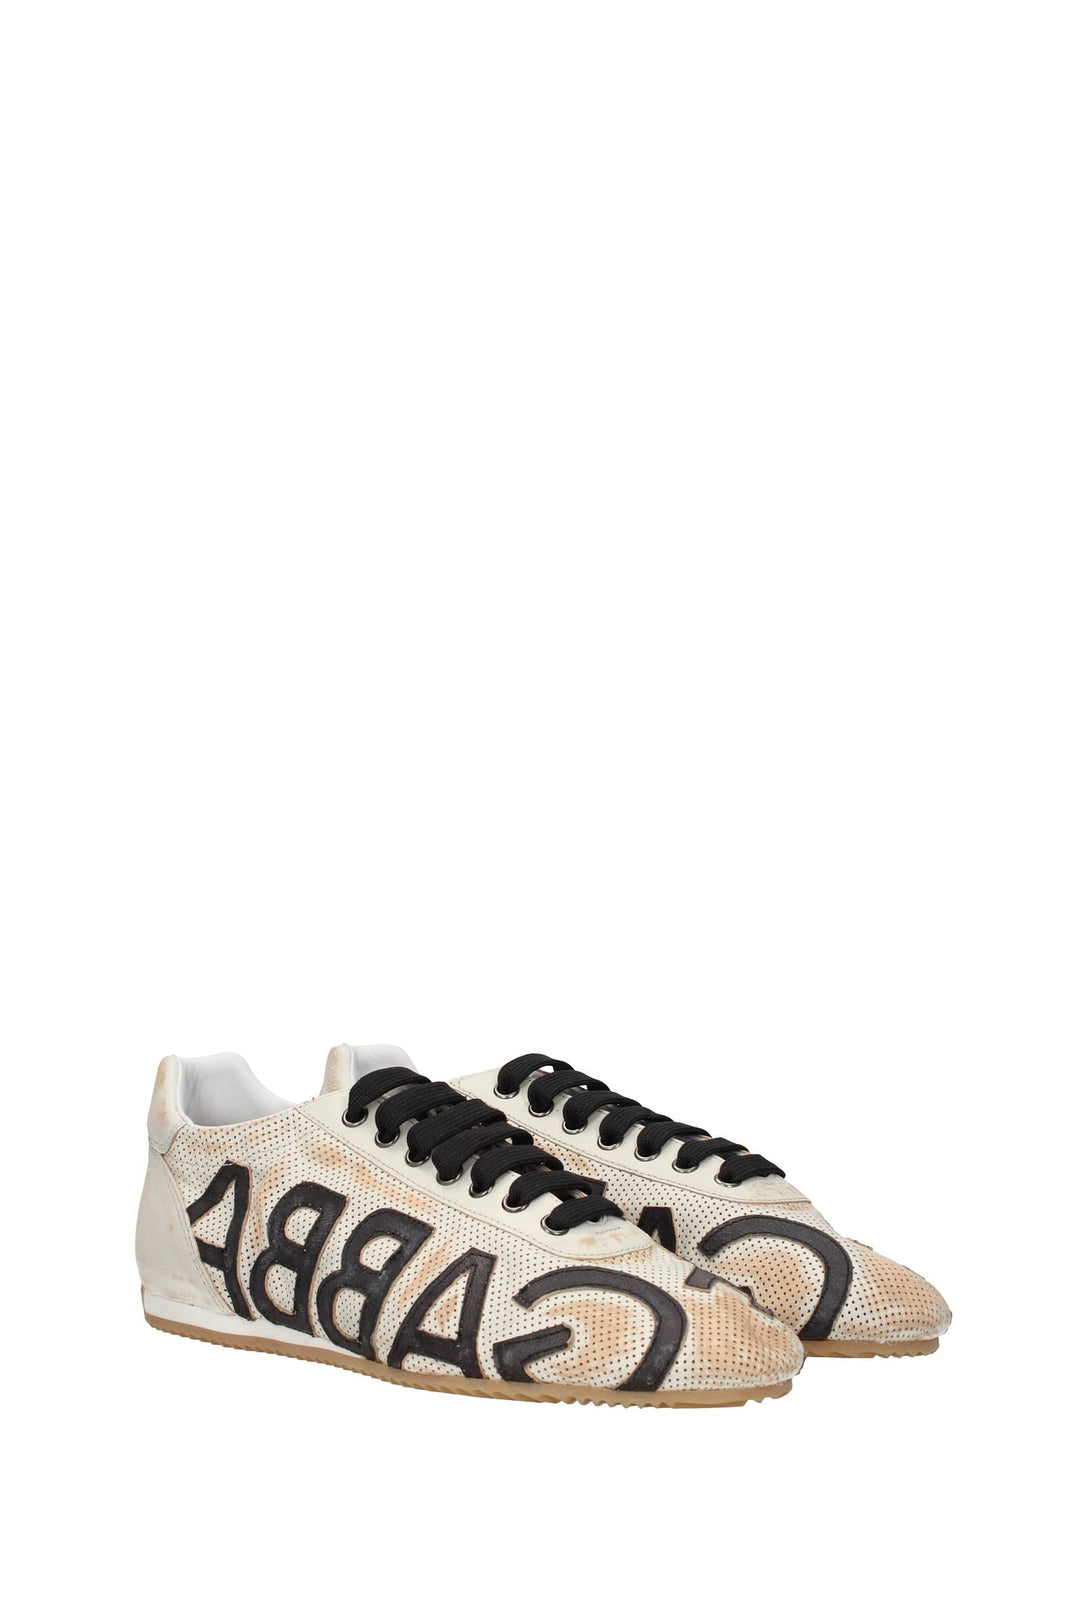 Dolce&Gabbana Sneakers Pelle Beige - Dolce & Gabbana - Uomo